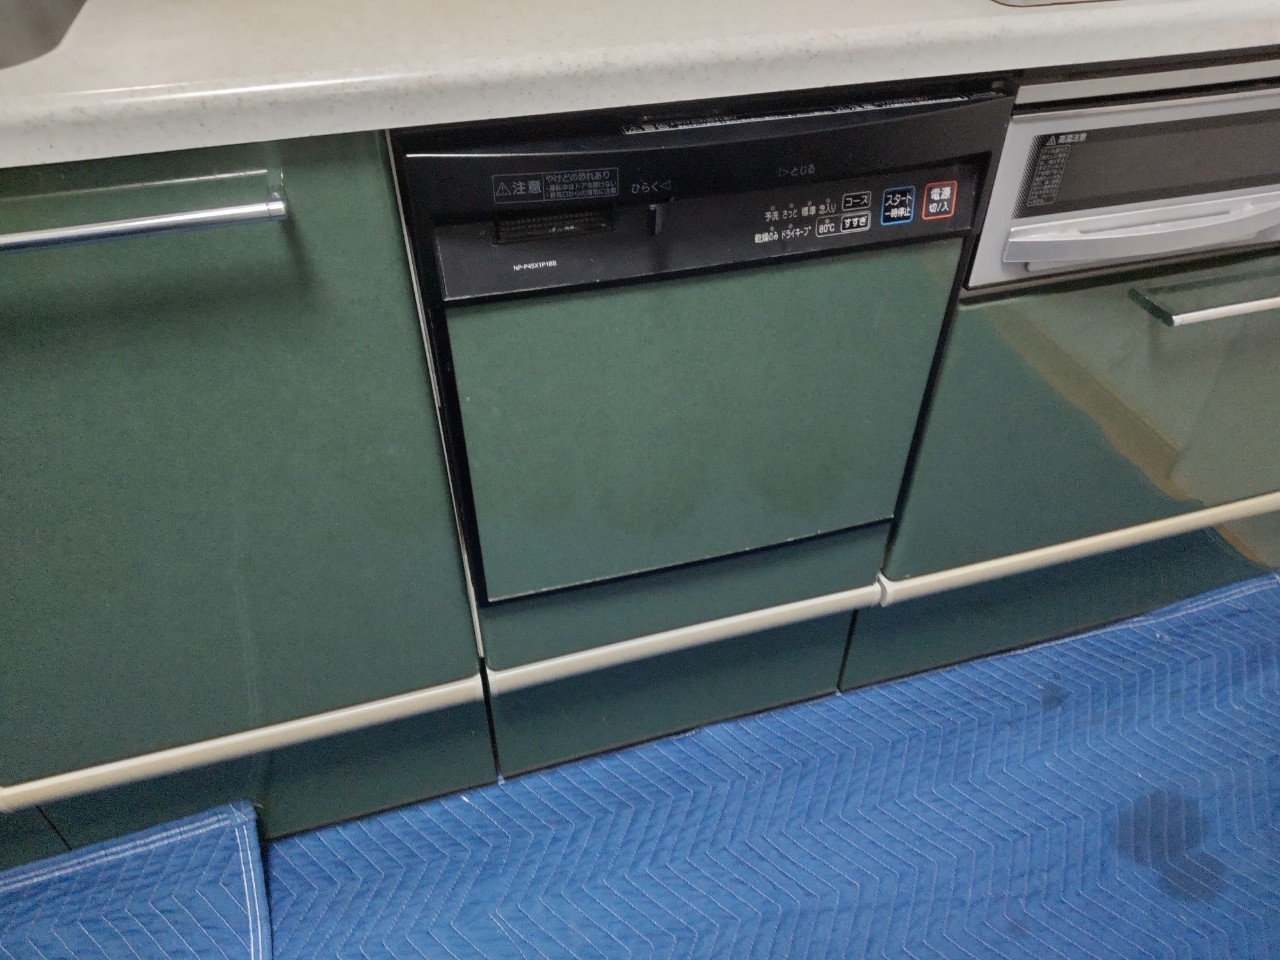 パナソニック NP-45VD9S ビルトイン食器洗い乾燥機 V9シリーズ (6人用